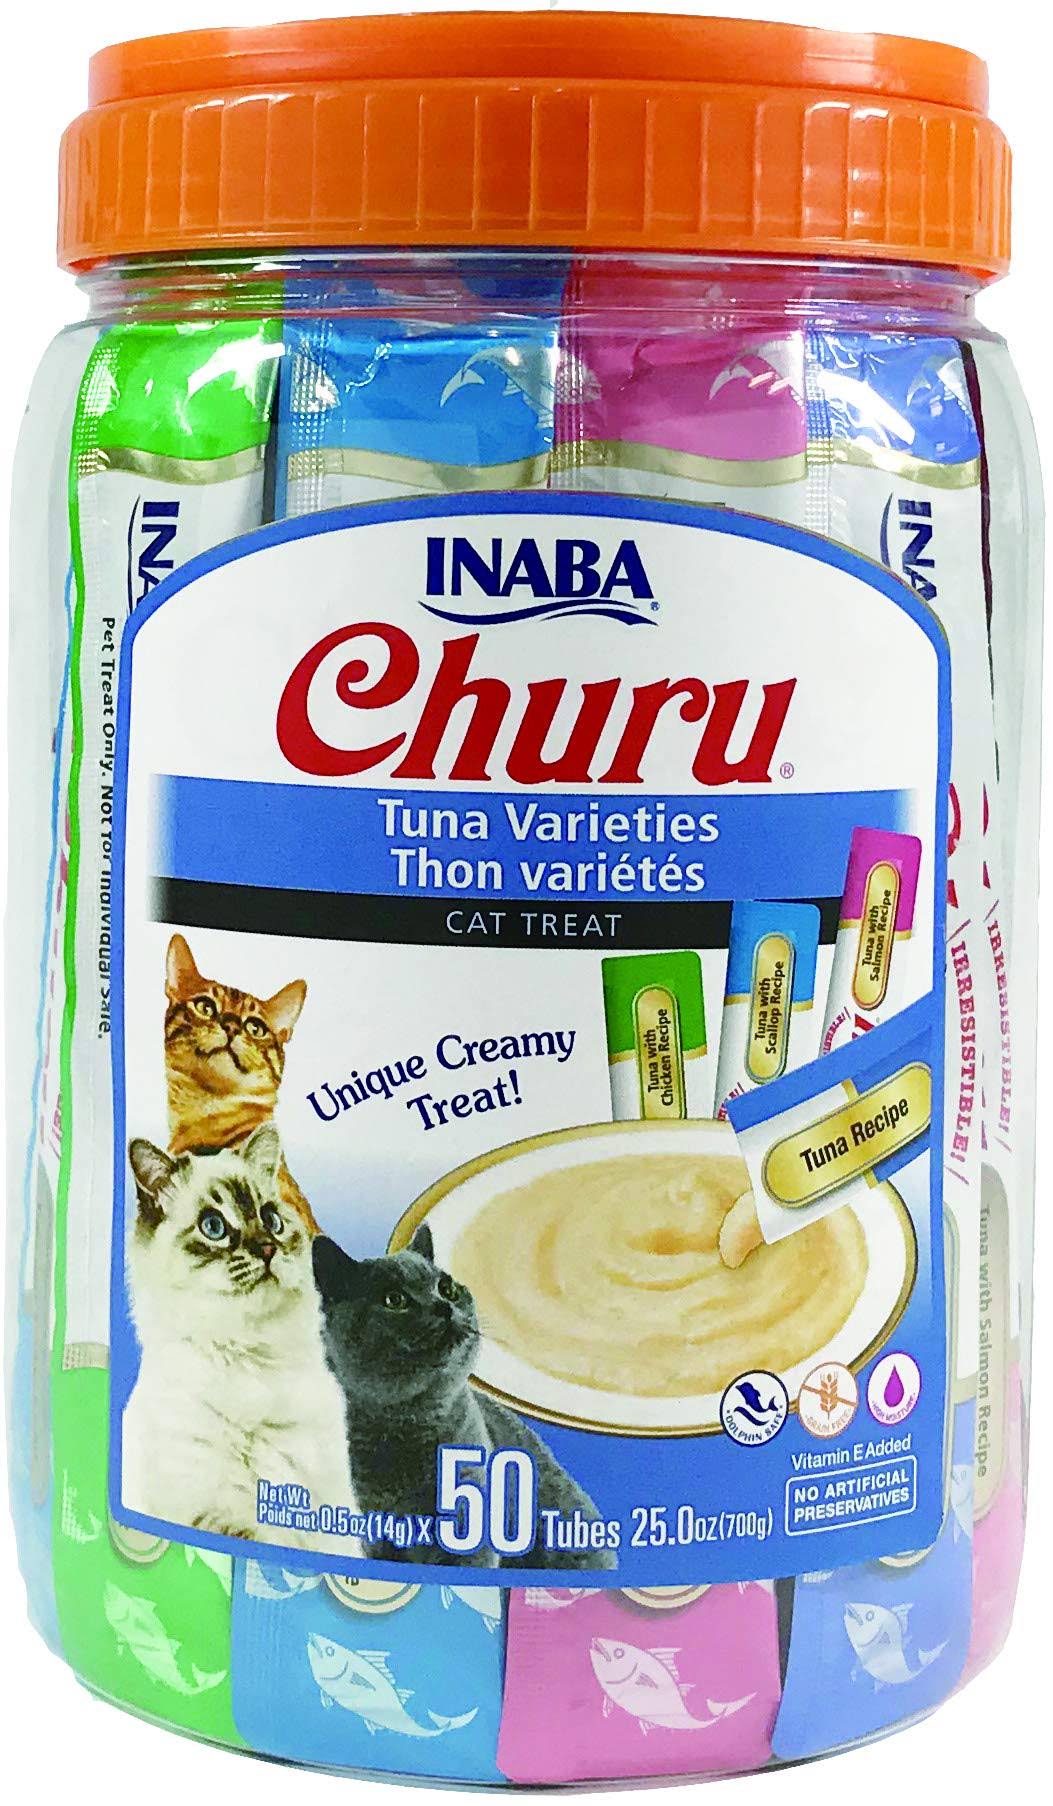 Inaba - Churu Tuna Varieties 50 Tubes